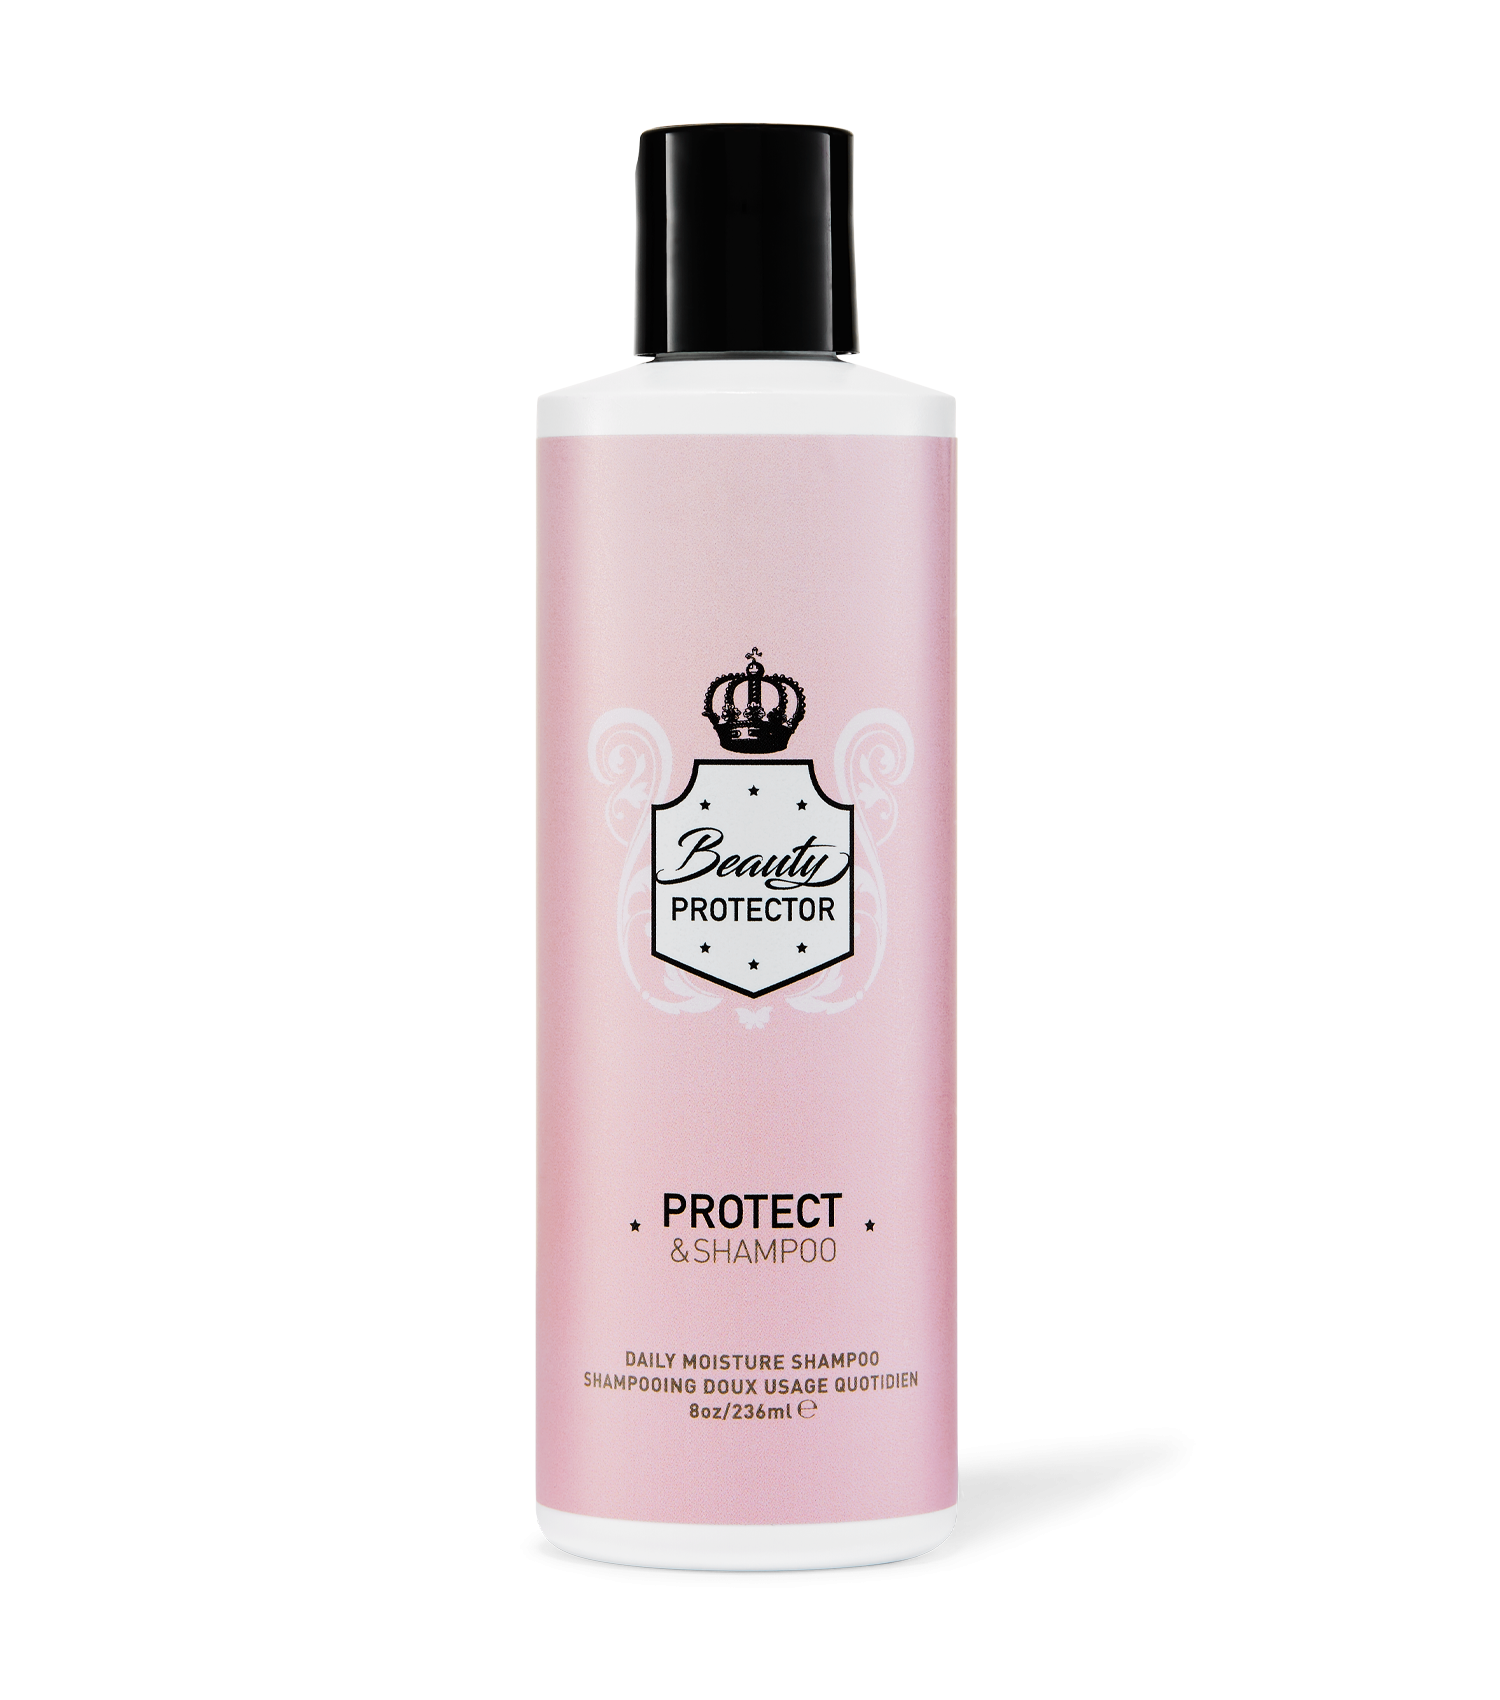 Protect & Shampoo